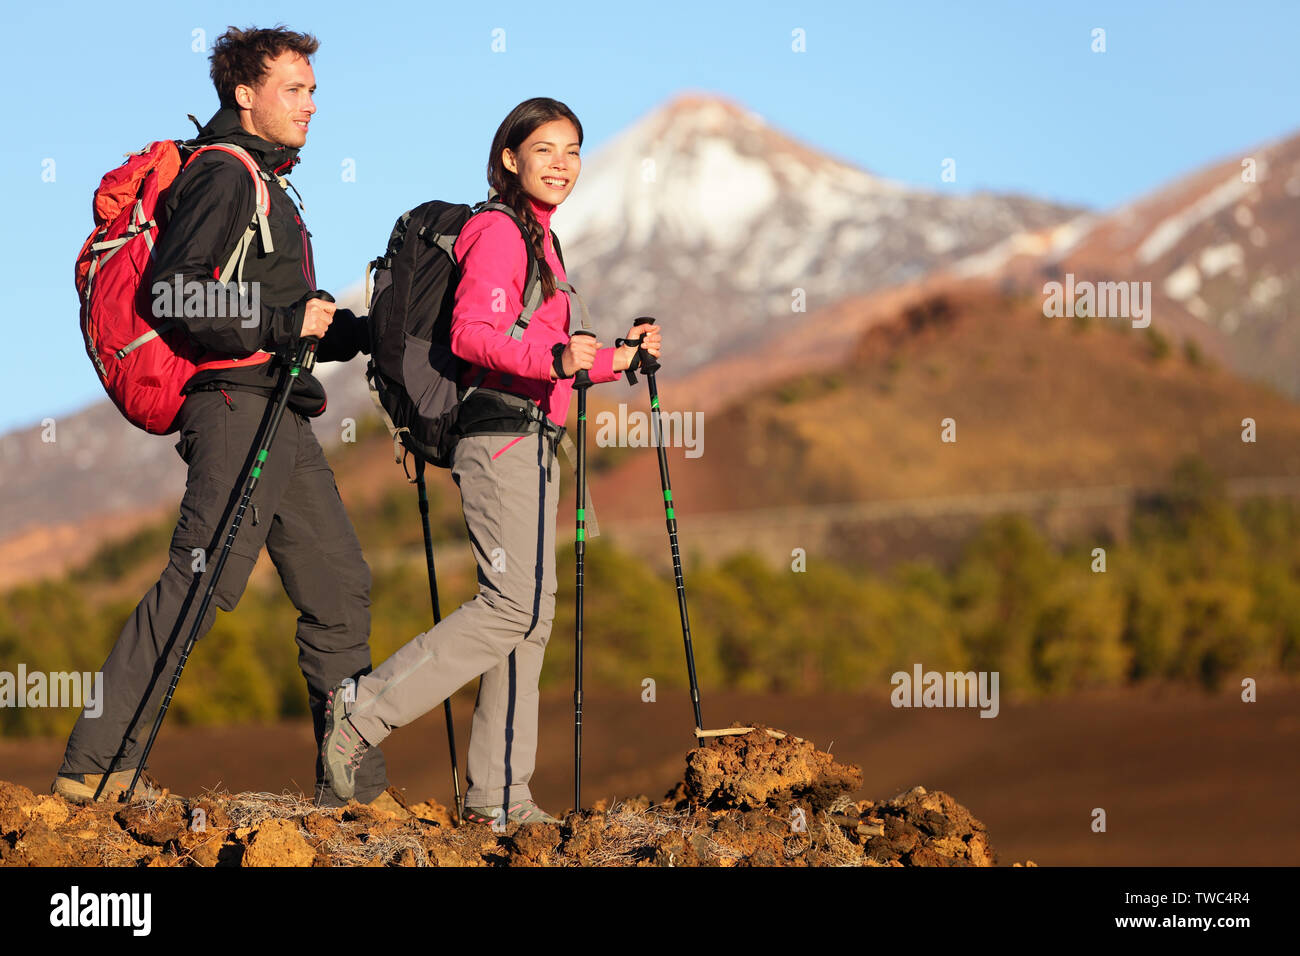 Wanderer Menschen wandern - gesunden, aktiven Lebensstil. Wanderer Menschen Wandern in wunderschöner Natur Landschaft. Frau und Mann Wanderer wandern während der Wanderung auf den Vulkan Teide, Teneriffa, Kanarische Inseln, Spanien. Stockfoto